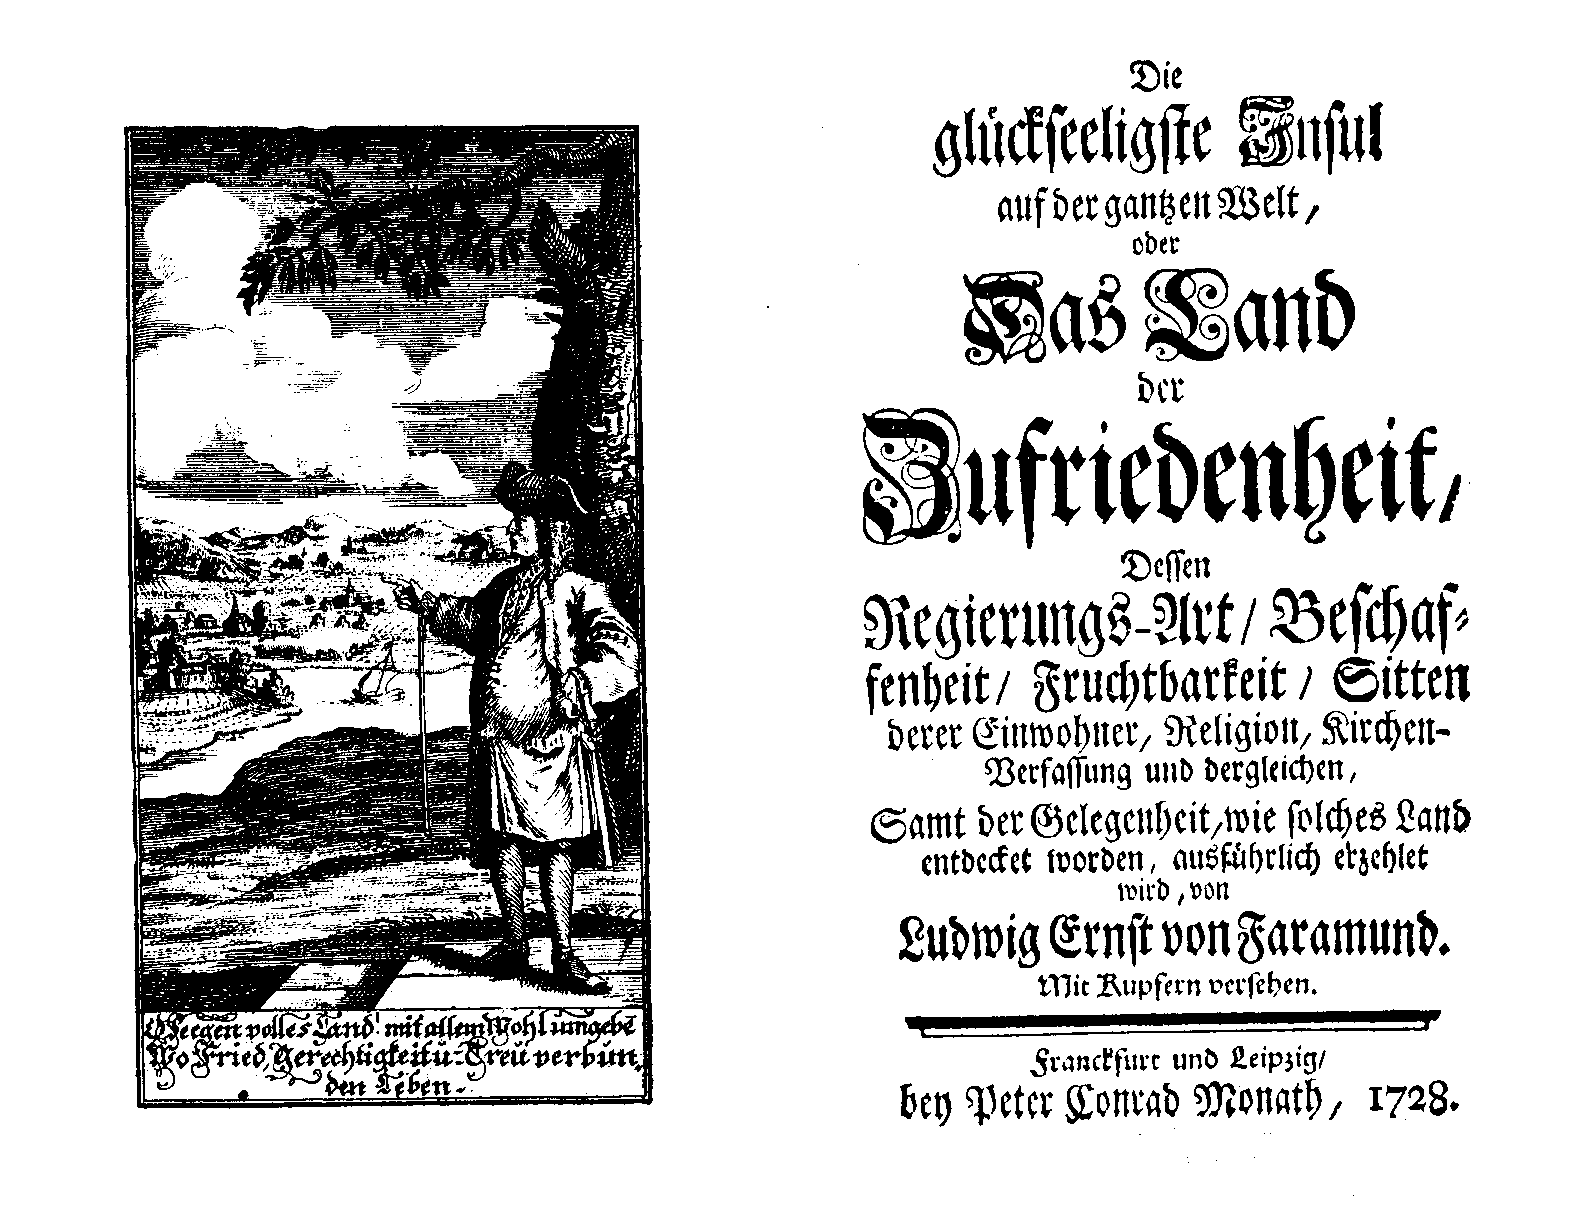 Ludwig Ernst von Faramund, Die glückseeligste Insul auf der gantzen Welt, oder Das Land der Zufriedenheit (Frackfurt/ Leipzig, P. C. Monath, 1728).